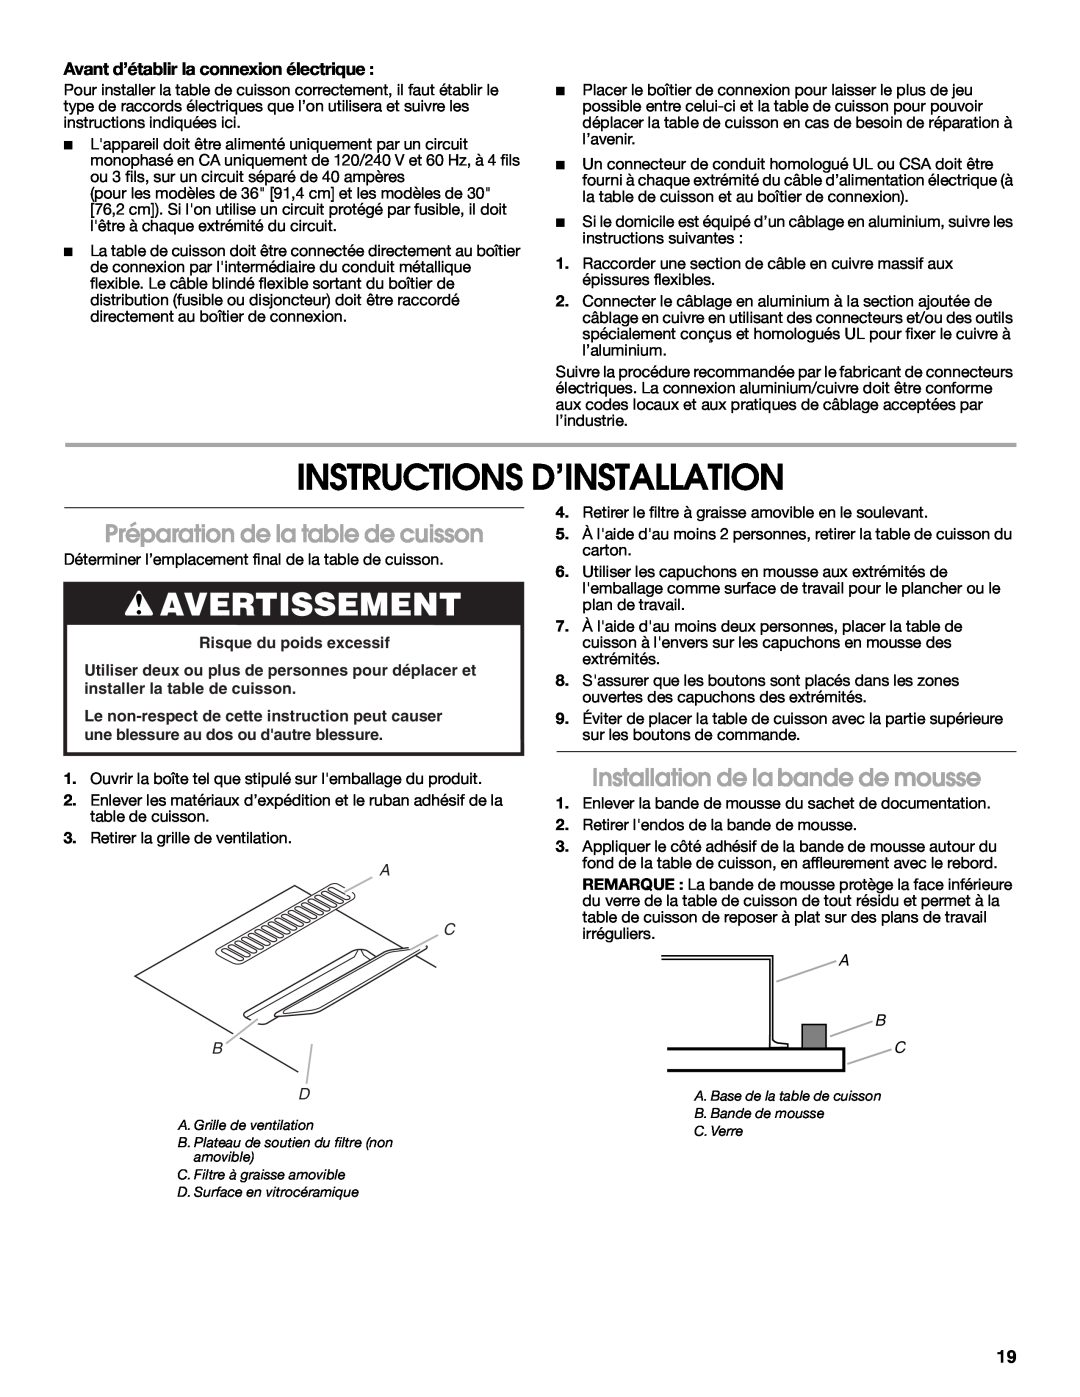 Jenn-Air W10197059B Instructions D’Installation, Préparation de la table de cuisson, Installation de la bande de mousse 